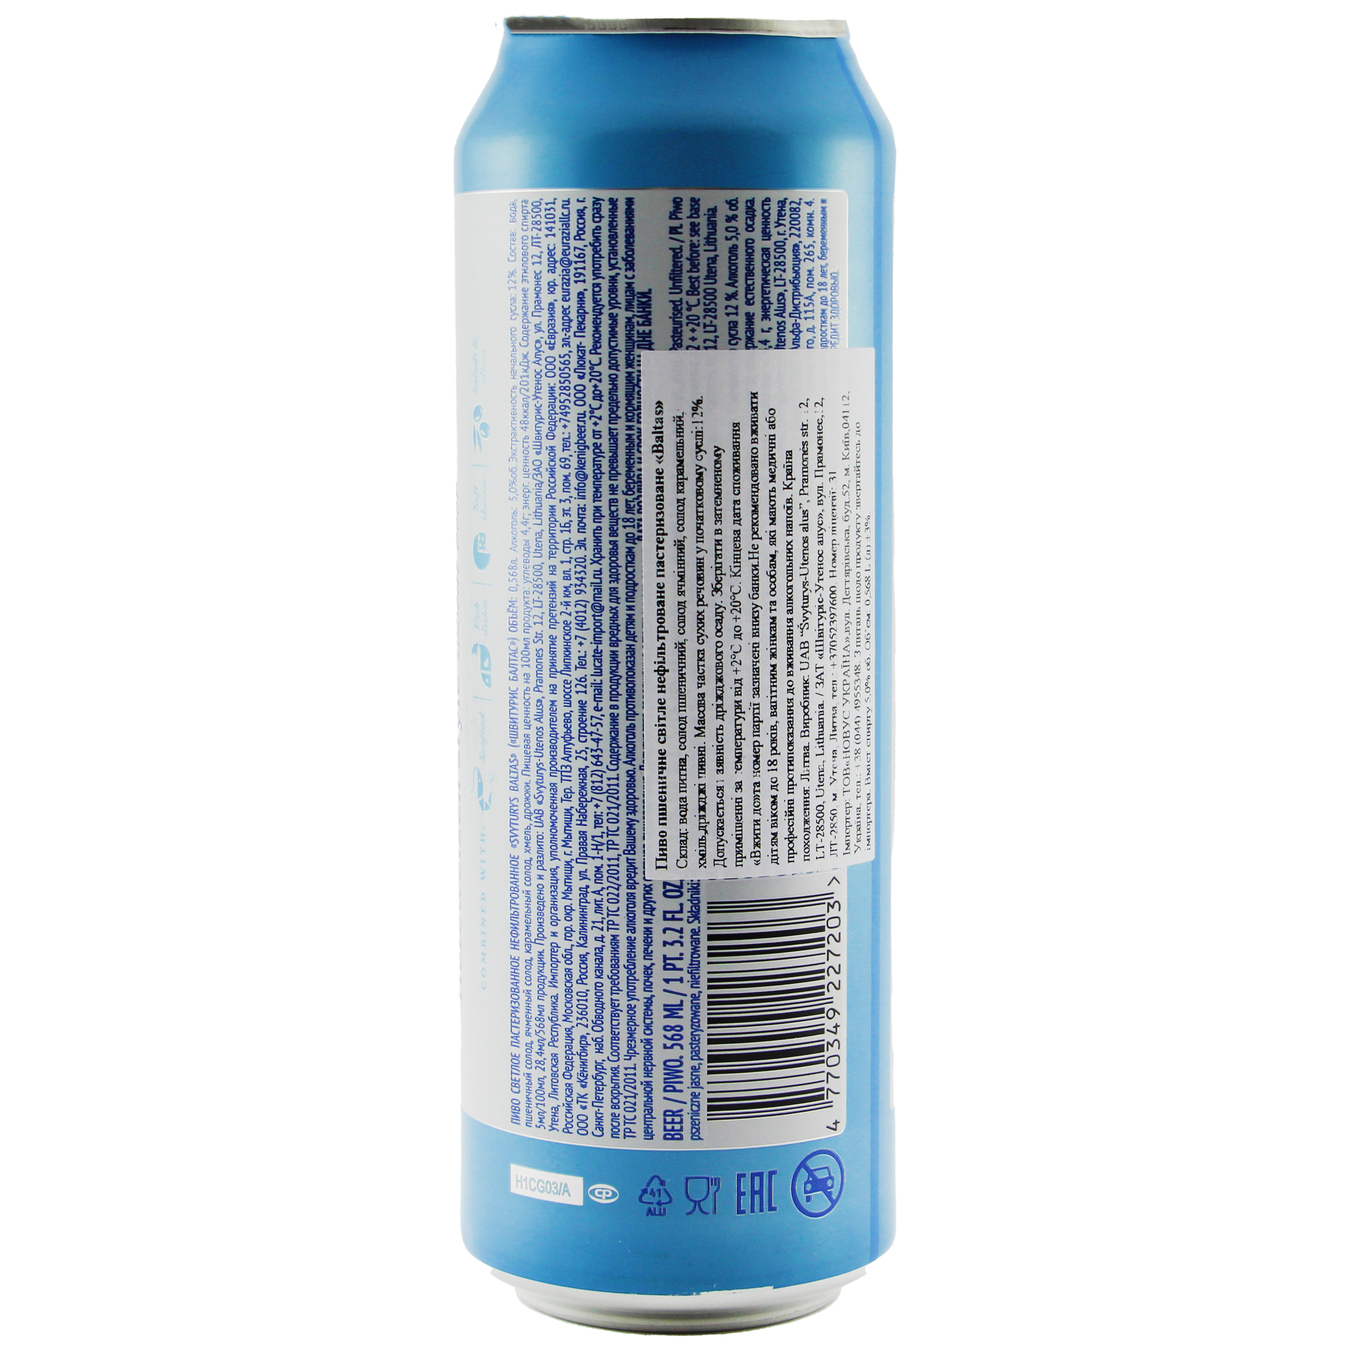 Пиво Svyturys Baltas светлое нефильтрованное 5% 0,568л 2